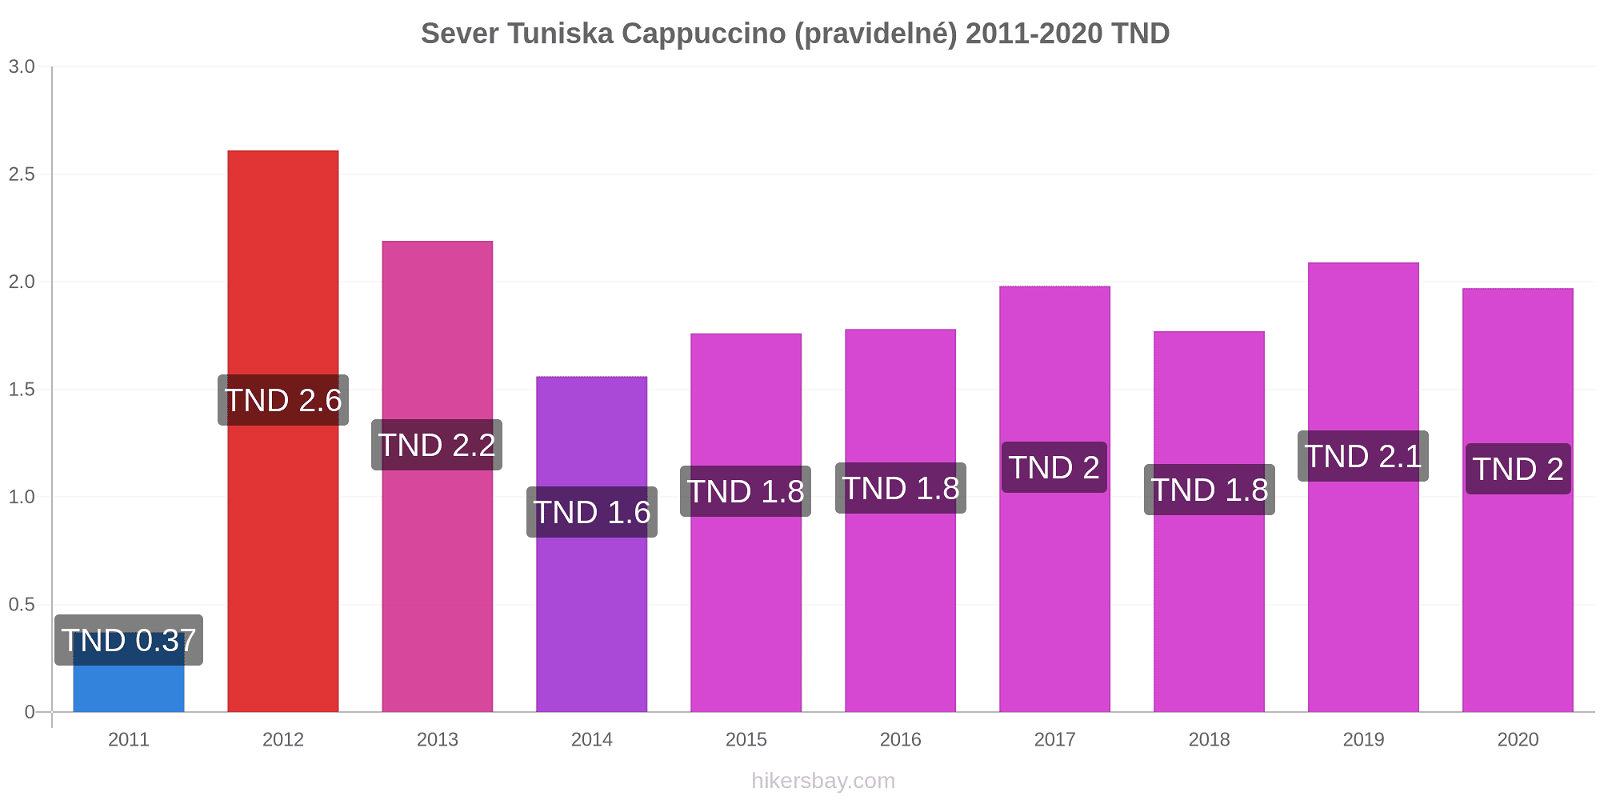 Sever Tuniska změny cen Cappuccino (pravidelné) hikersbay.com